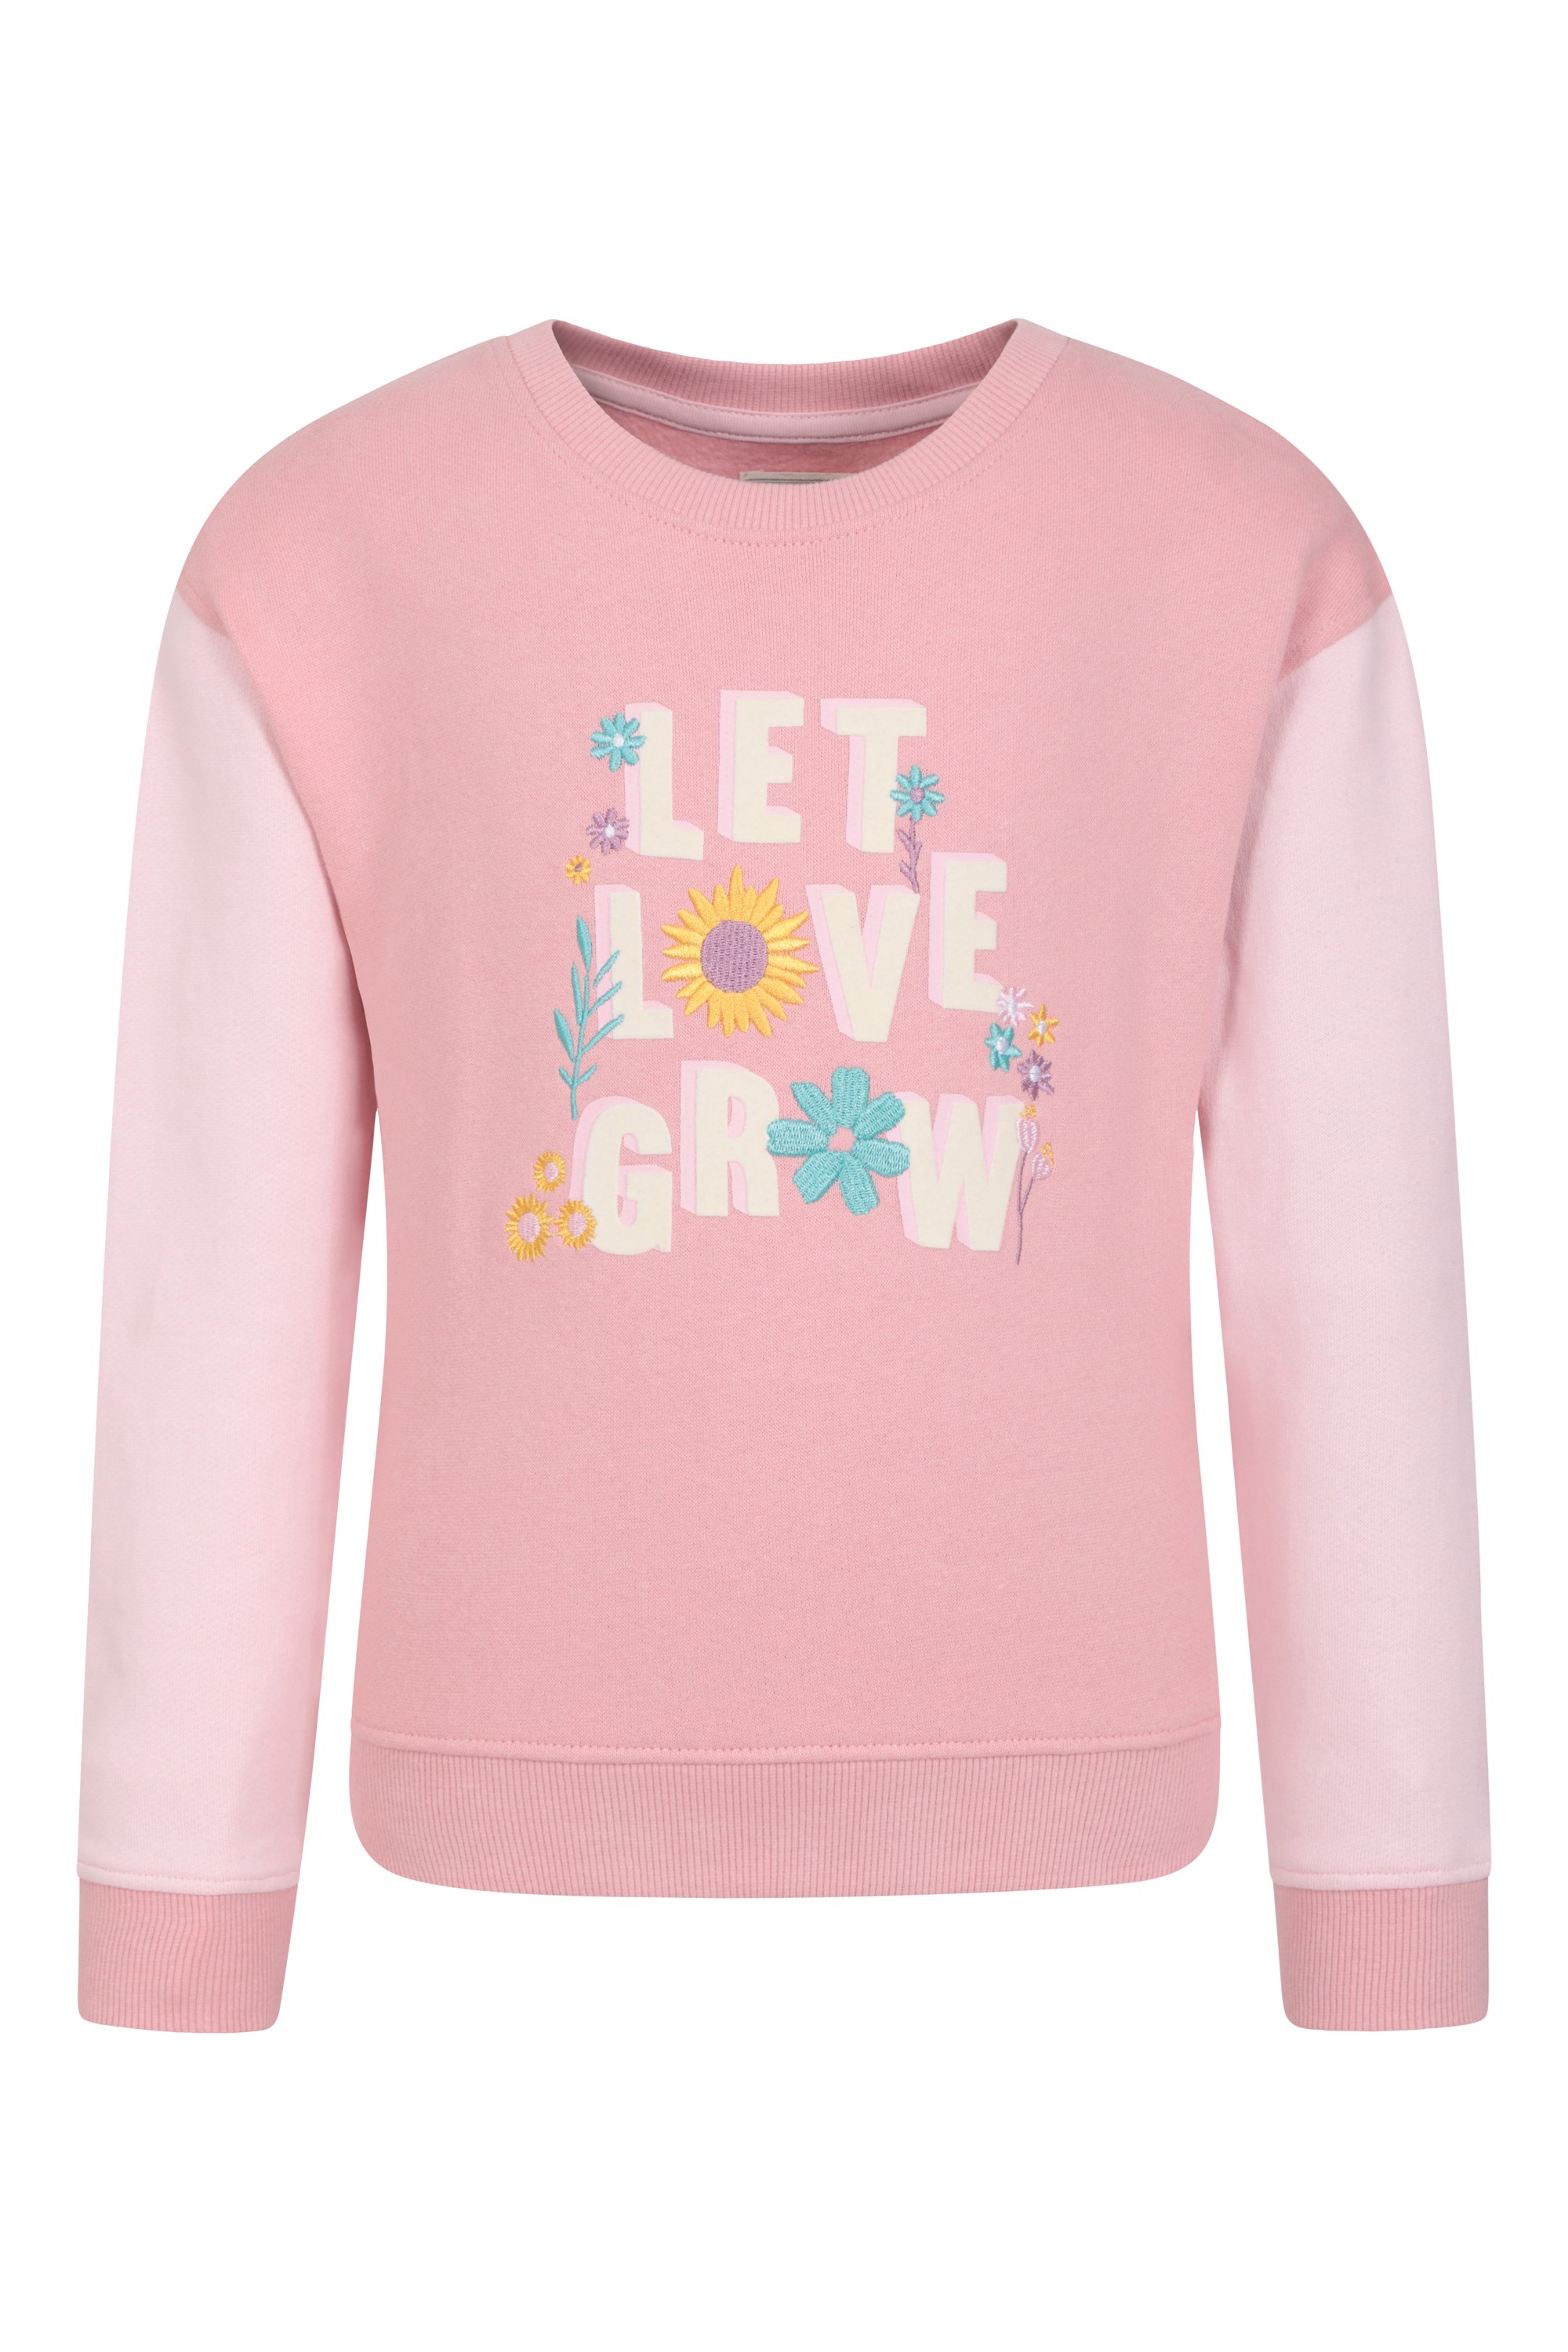 Organic Slogan - bluza dziecięca z bawełny organicznej - Pink